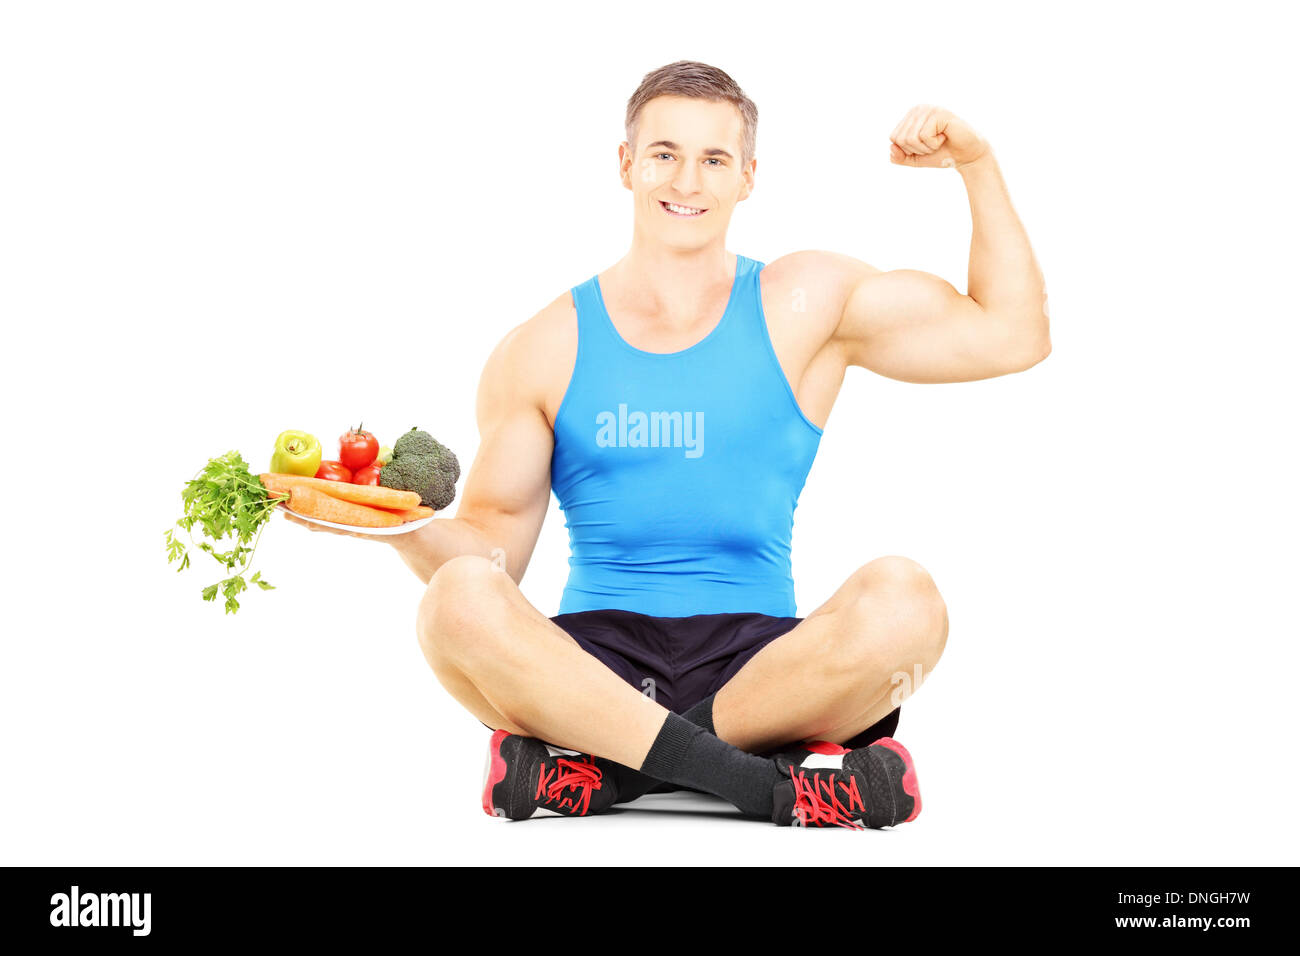 Giovane atleta maschio su un pavimento afferrando un piatto pieno di verdure fresche e mostrando il suo muscolo Foto Stock